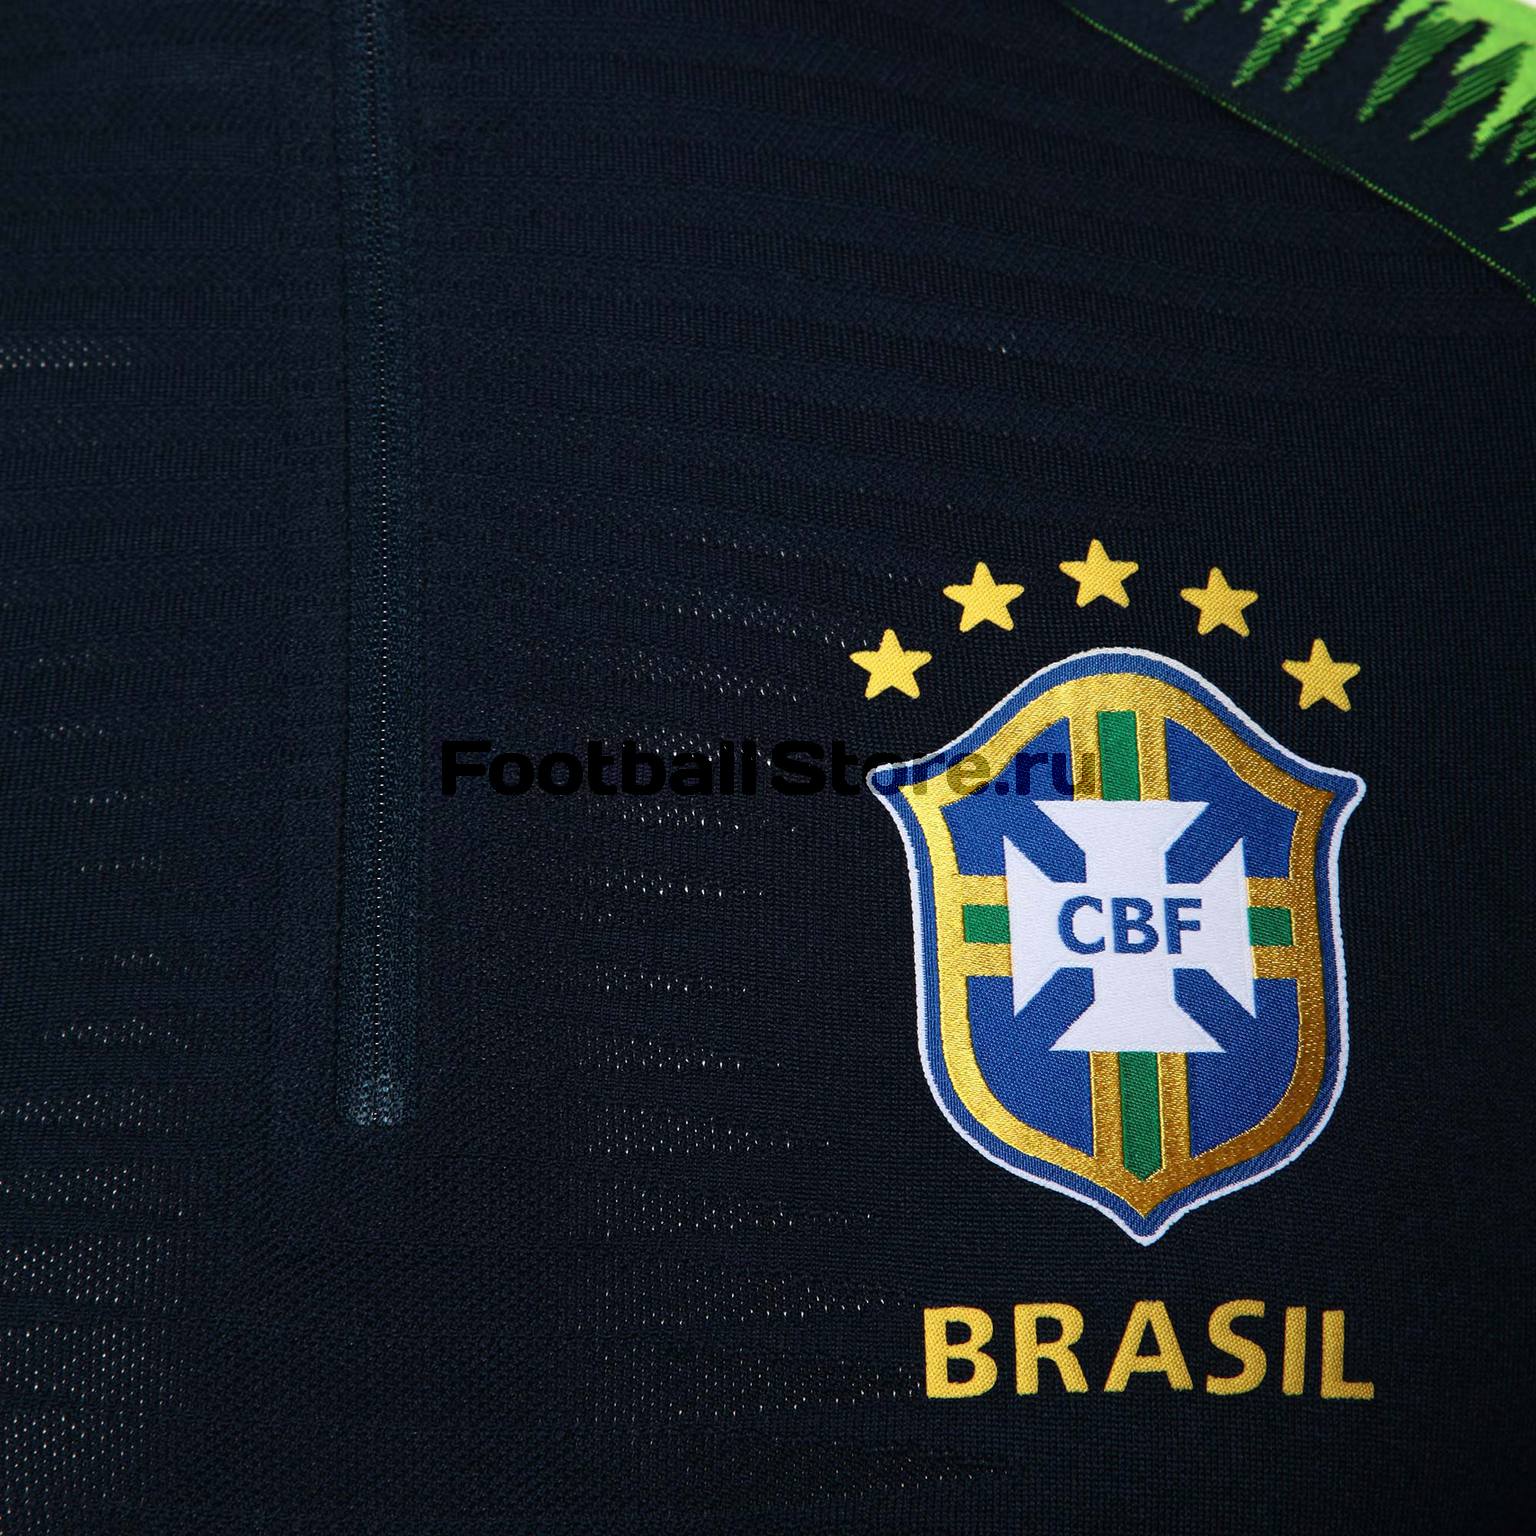 Олимпийка Nike сборной Бразилии 893011-454 